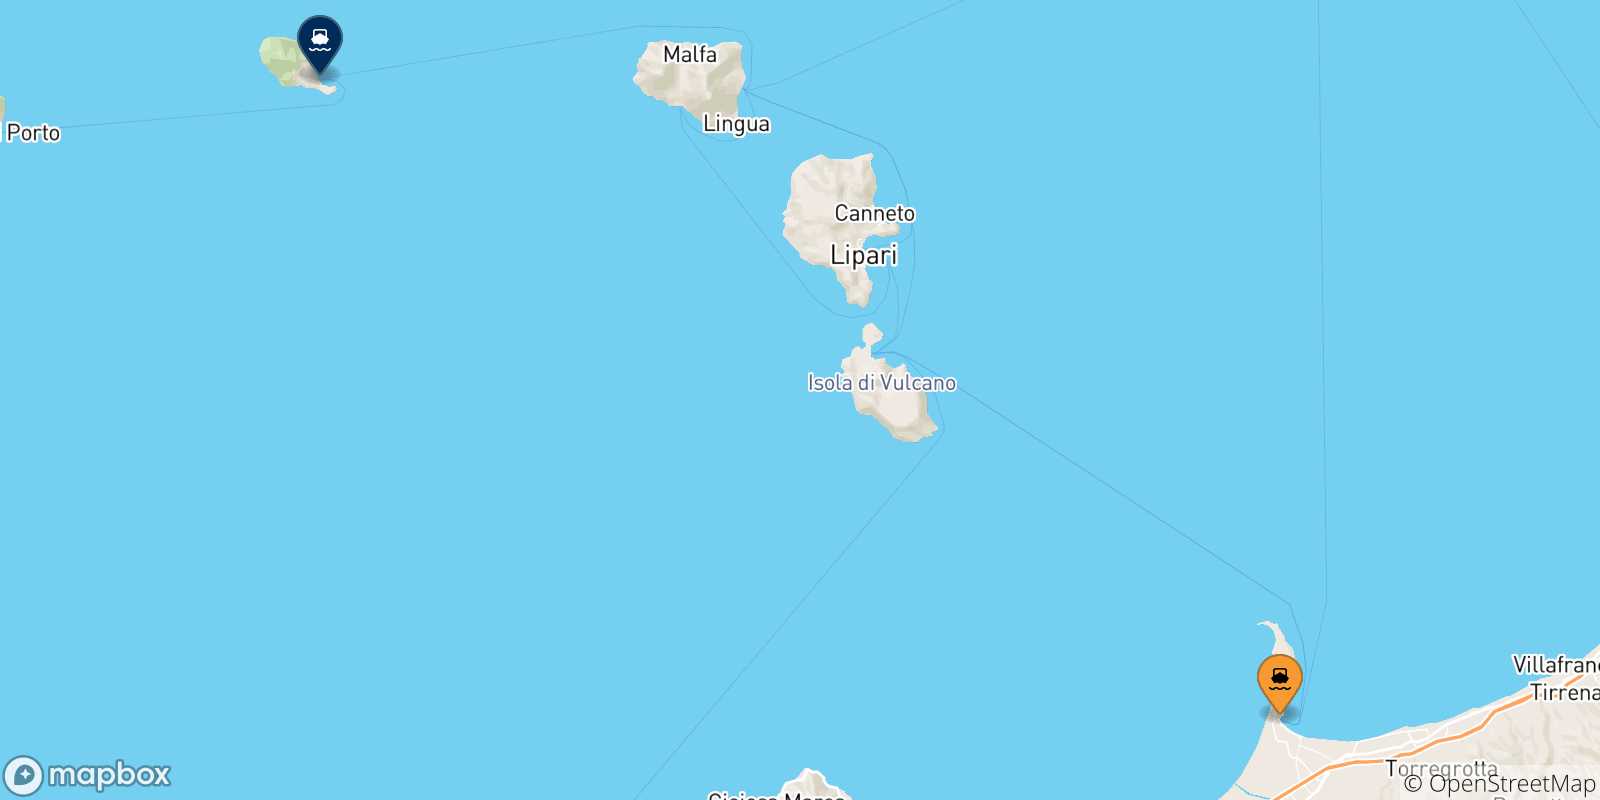 Mappa delle possibili rotte tra la Sicilia e Filicudi